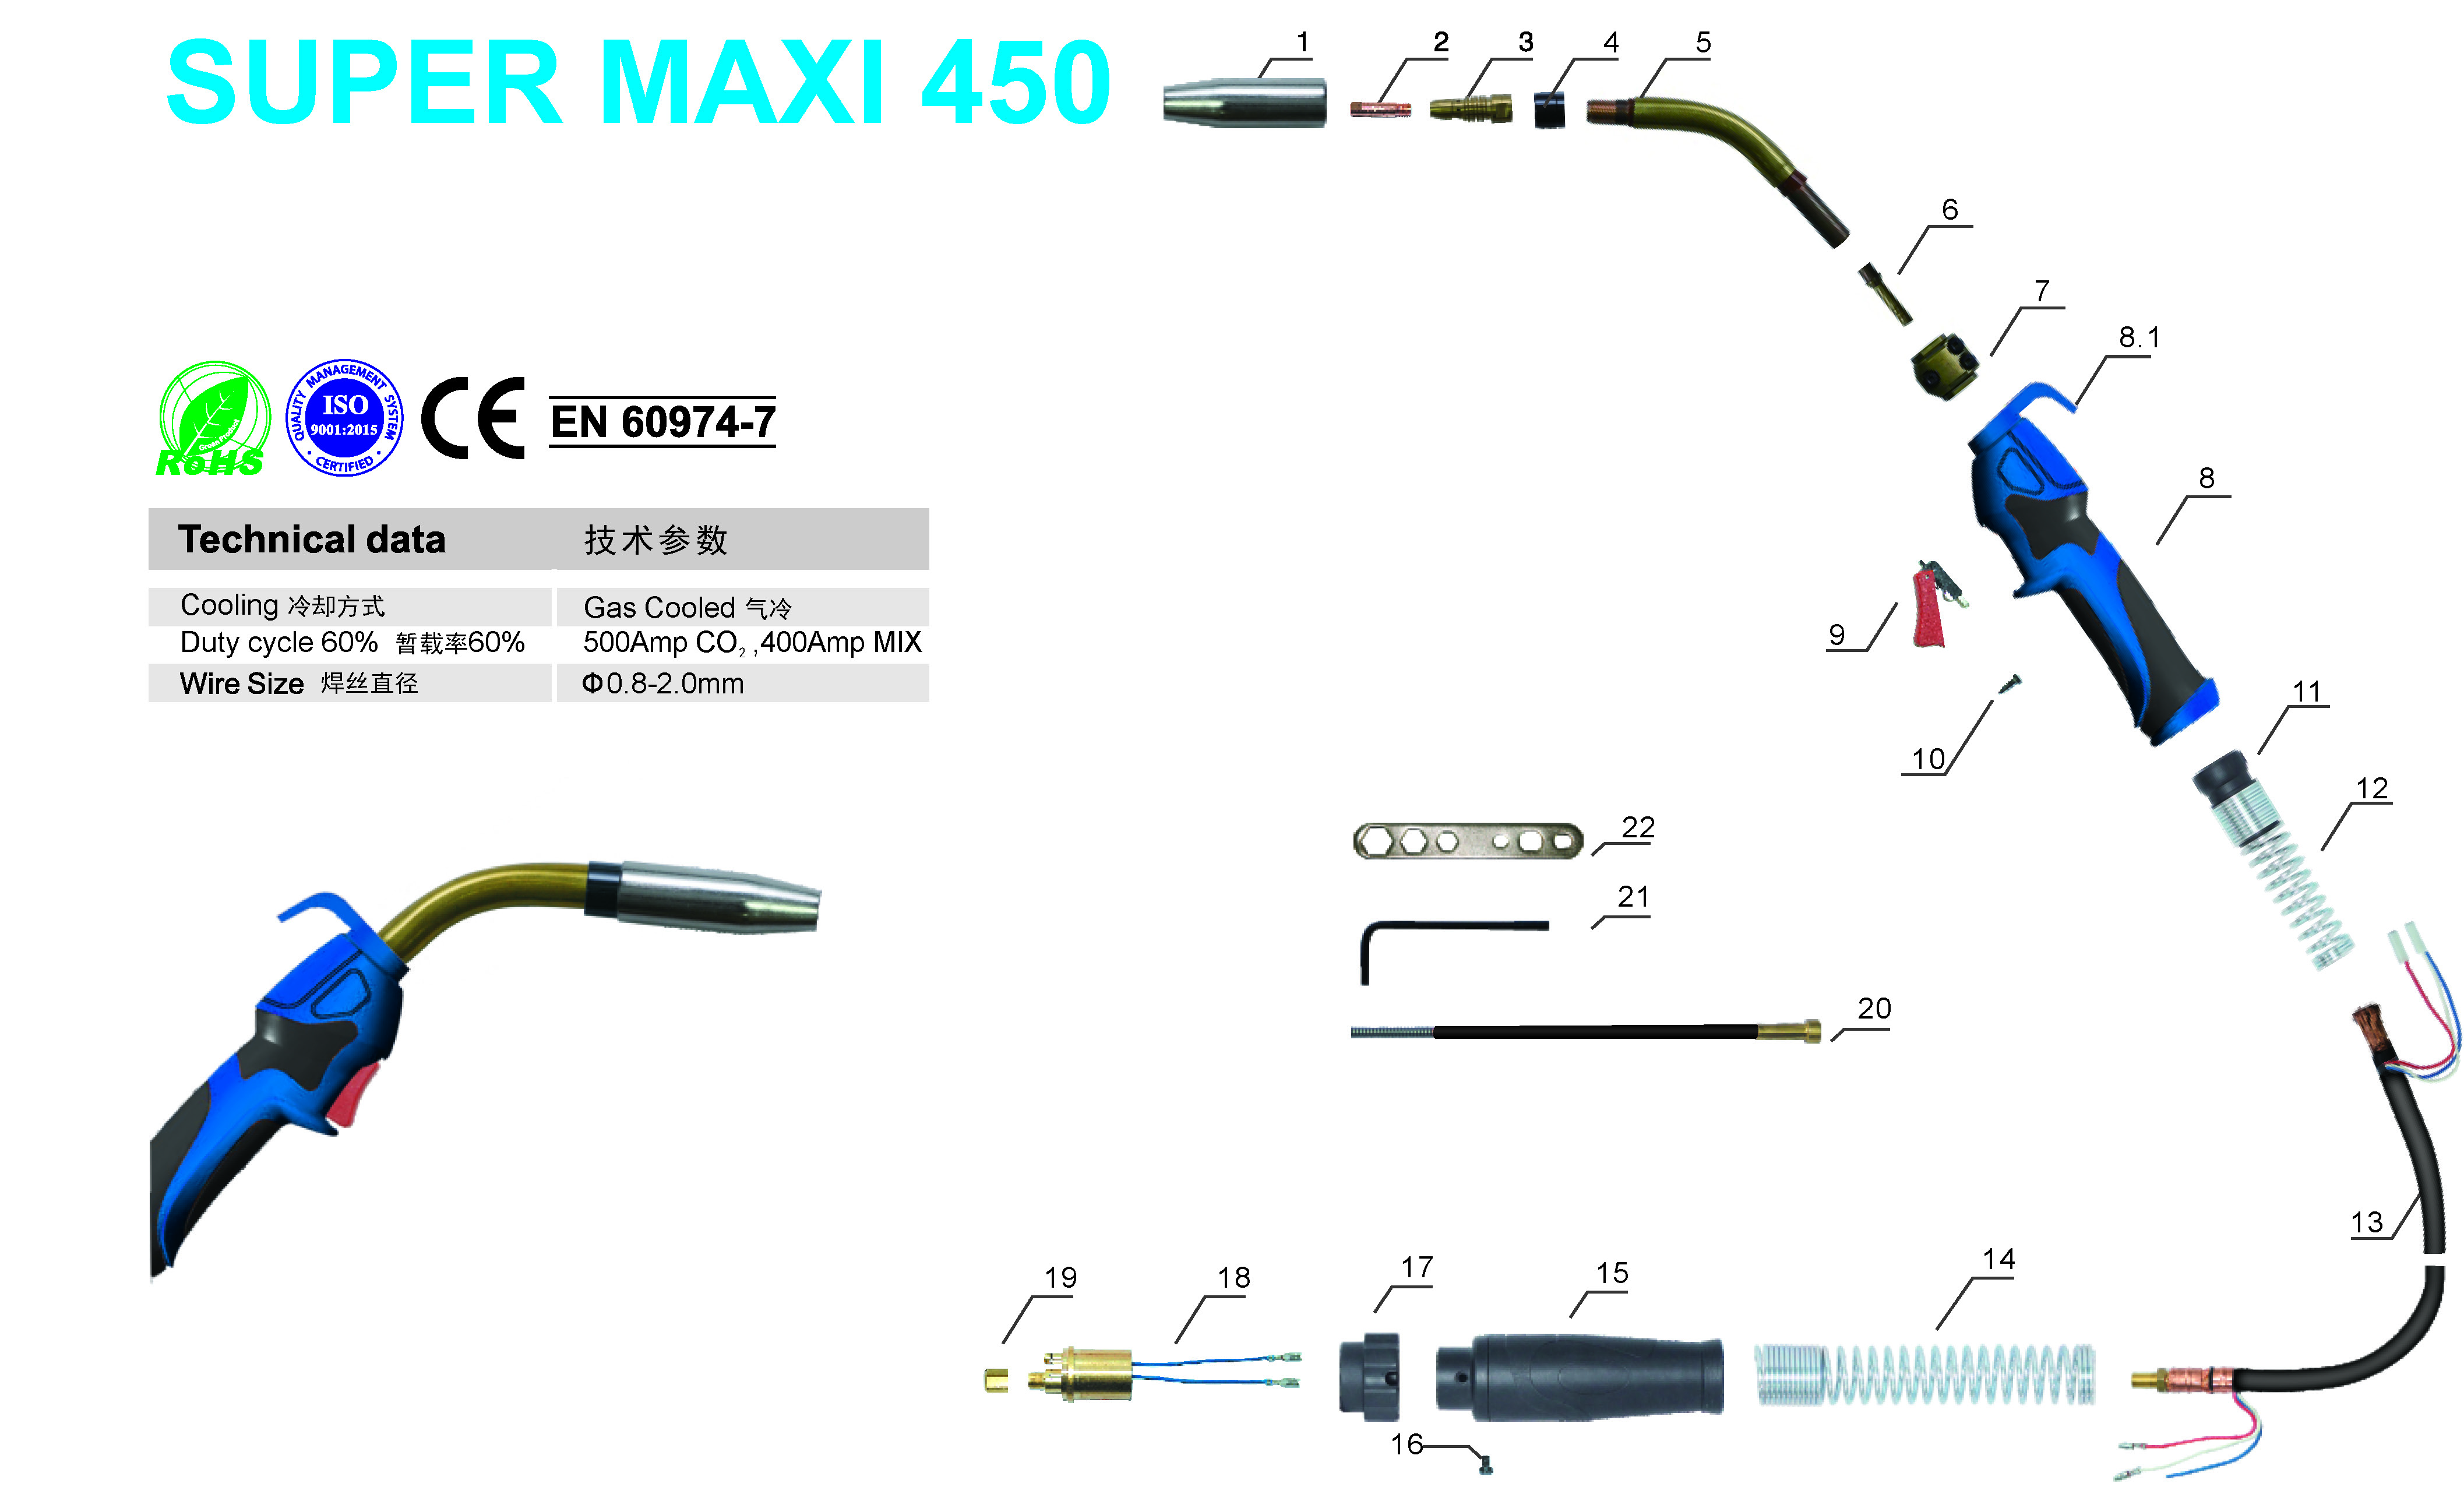 Super Maxi 450